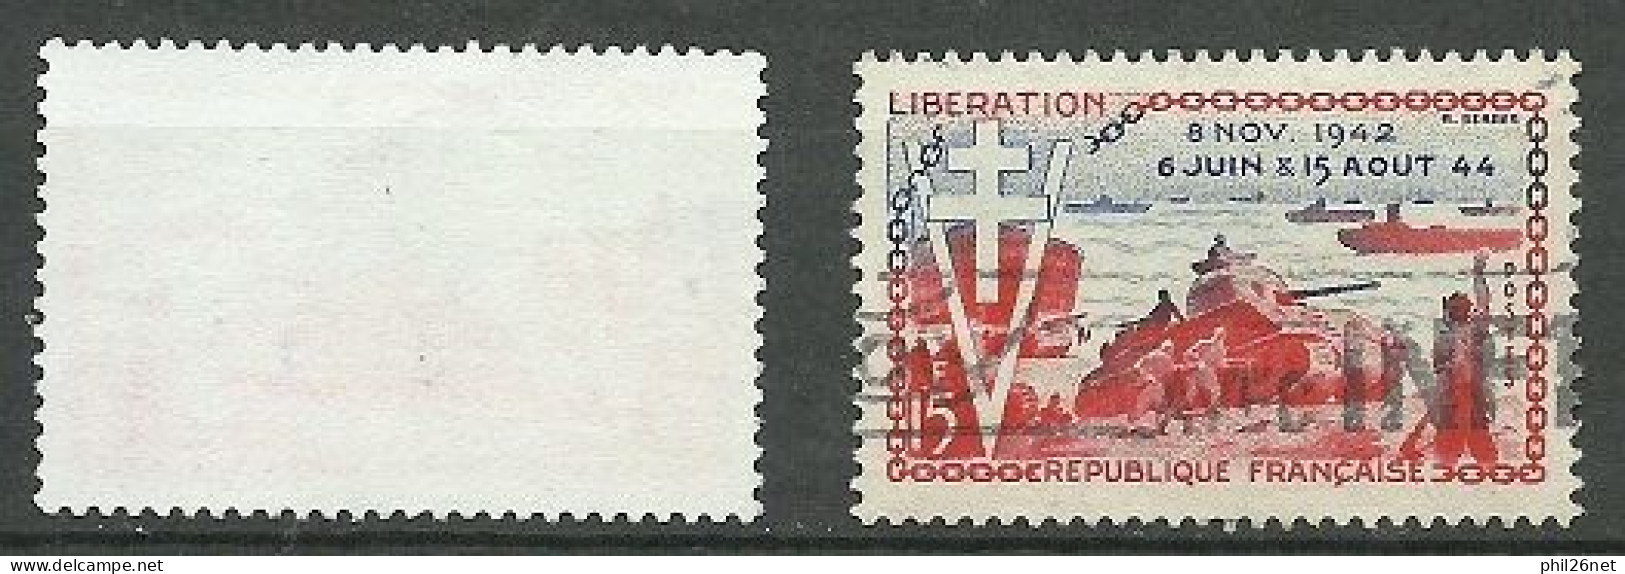 France  N° 983 Libération Rose Et Bleu   Oblitéré   B/TB Le  Timbre Type Sur Les Scans Pour Comparer Soldé ! ! ! - Used Stamps